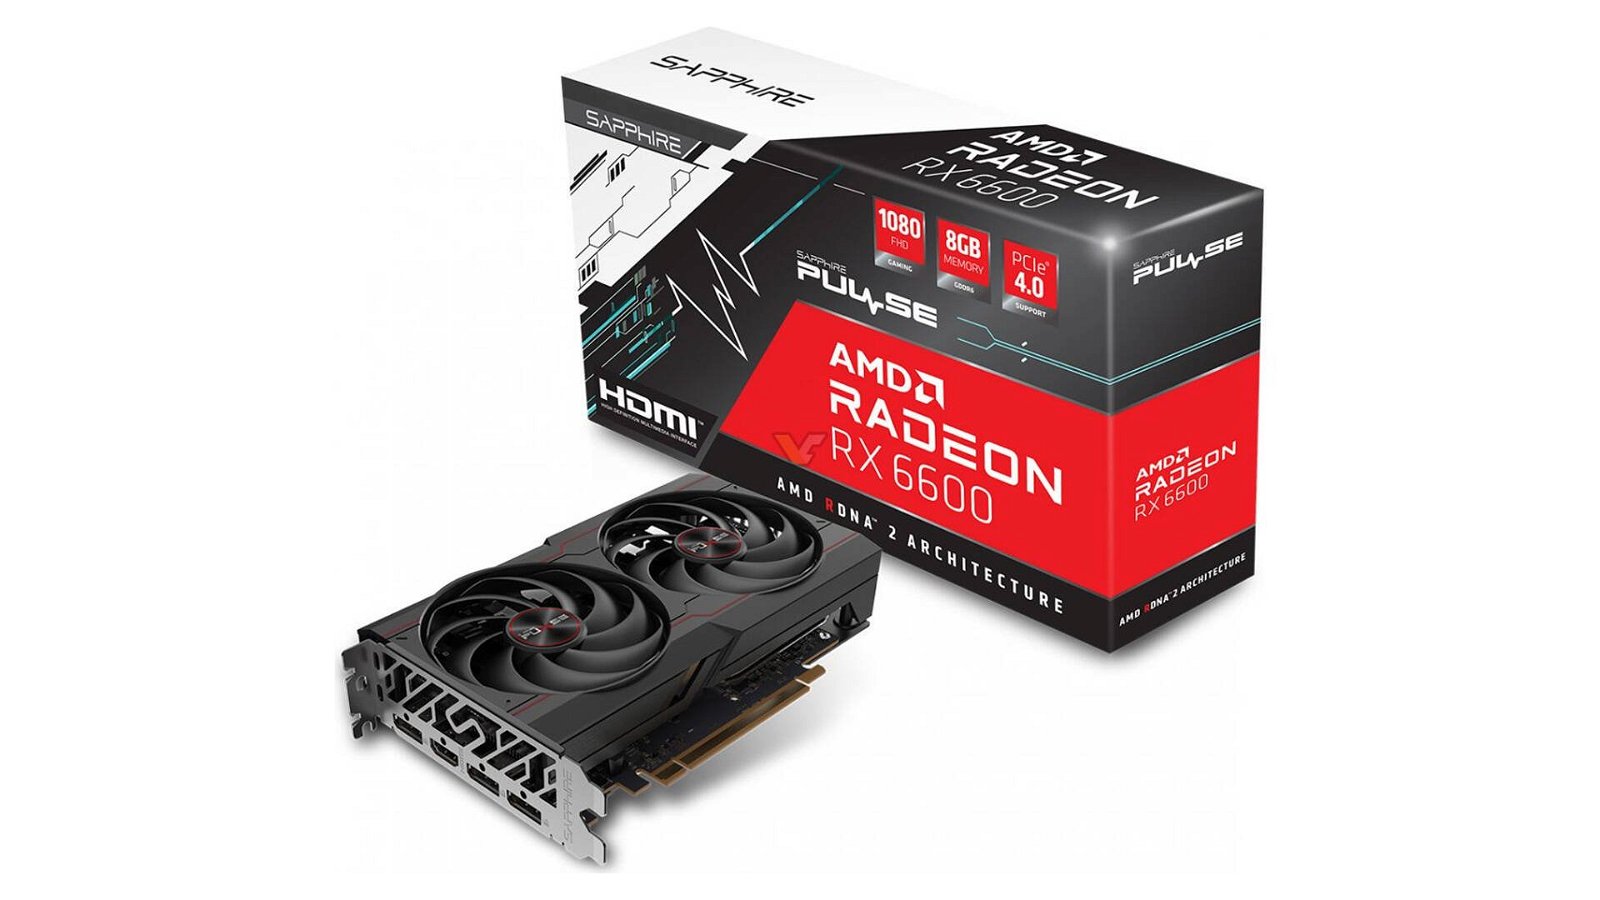 Immagine di AMD Radeon RX 6600, comparsa online la variante di Sapphire